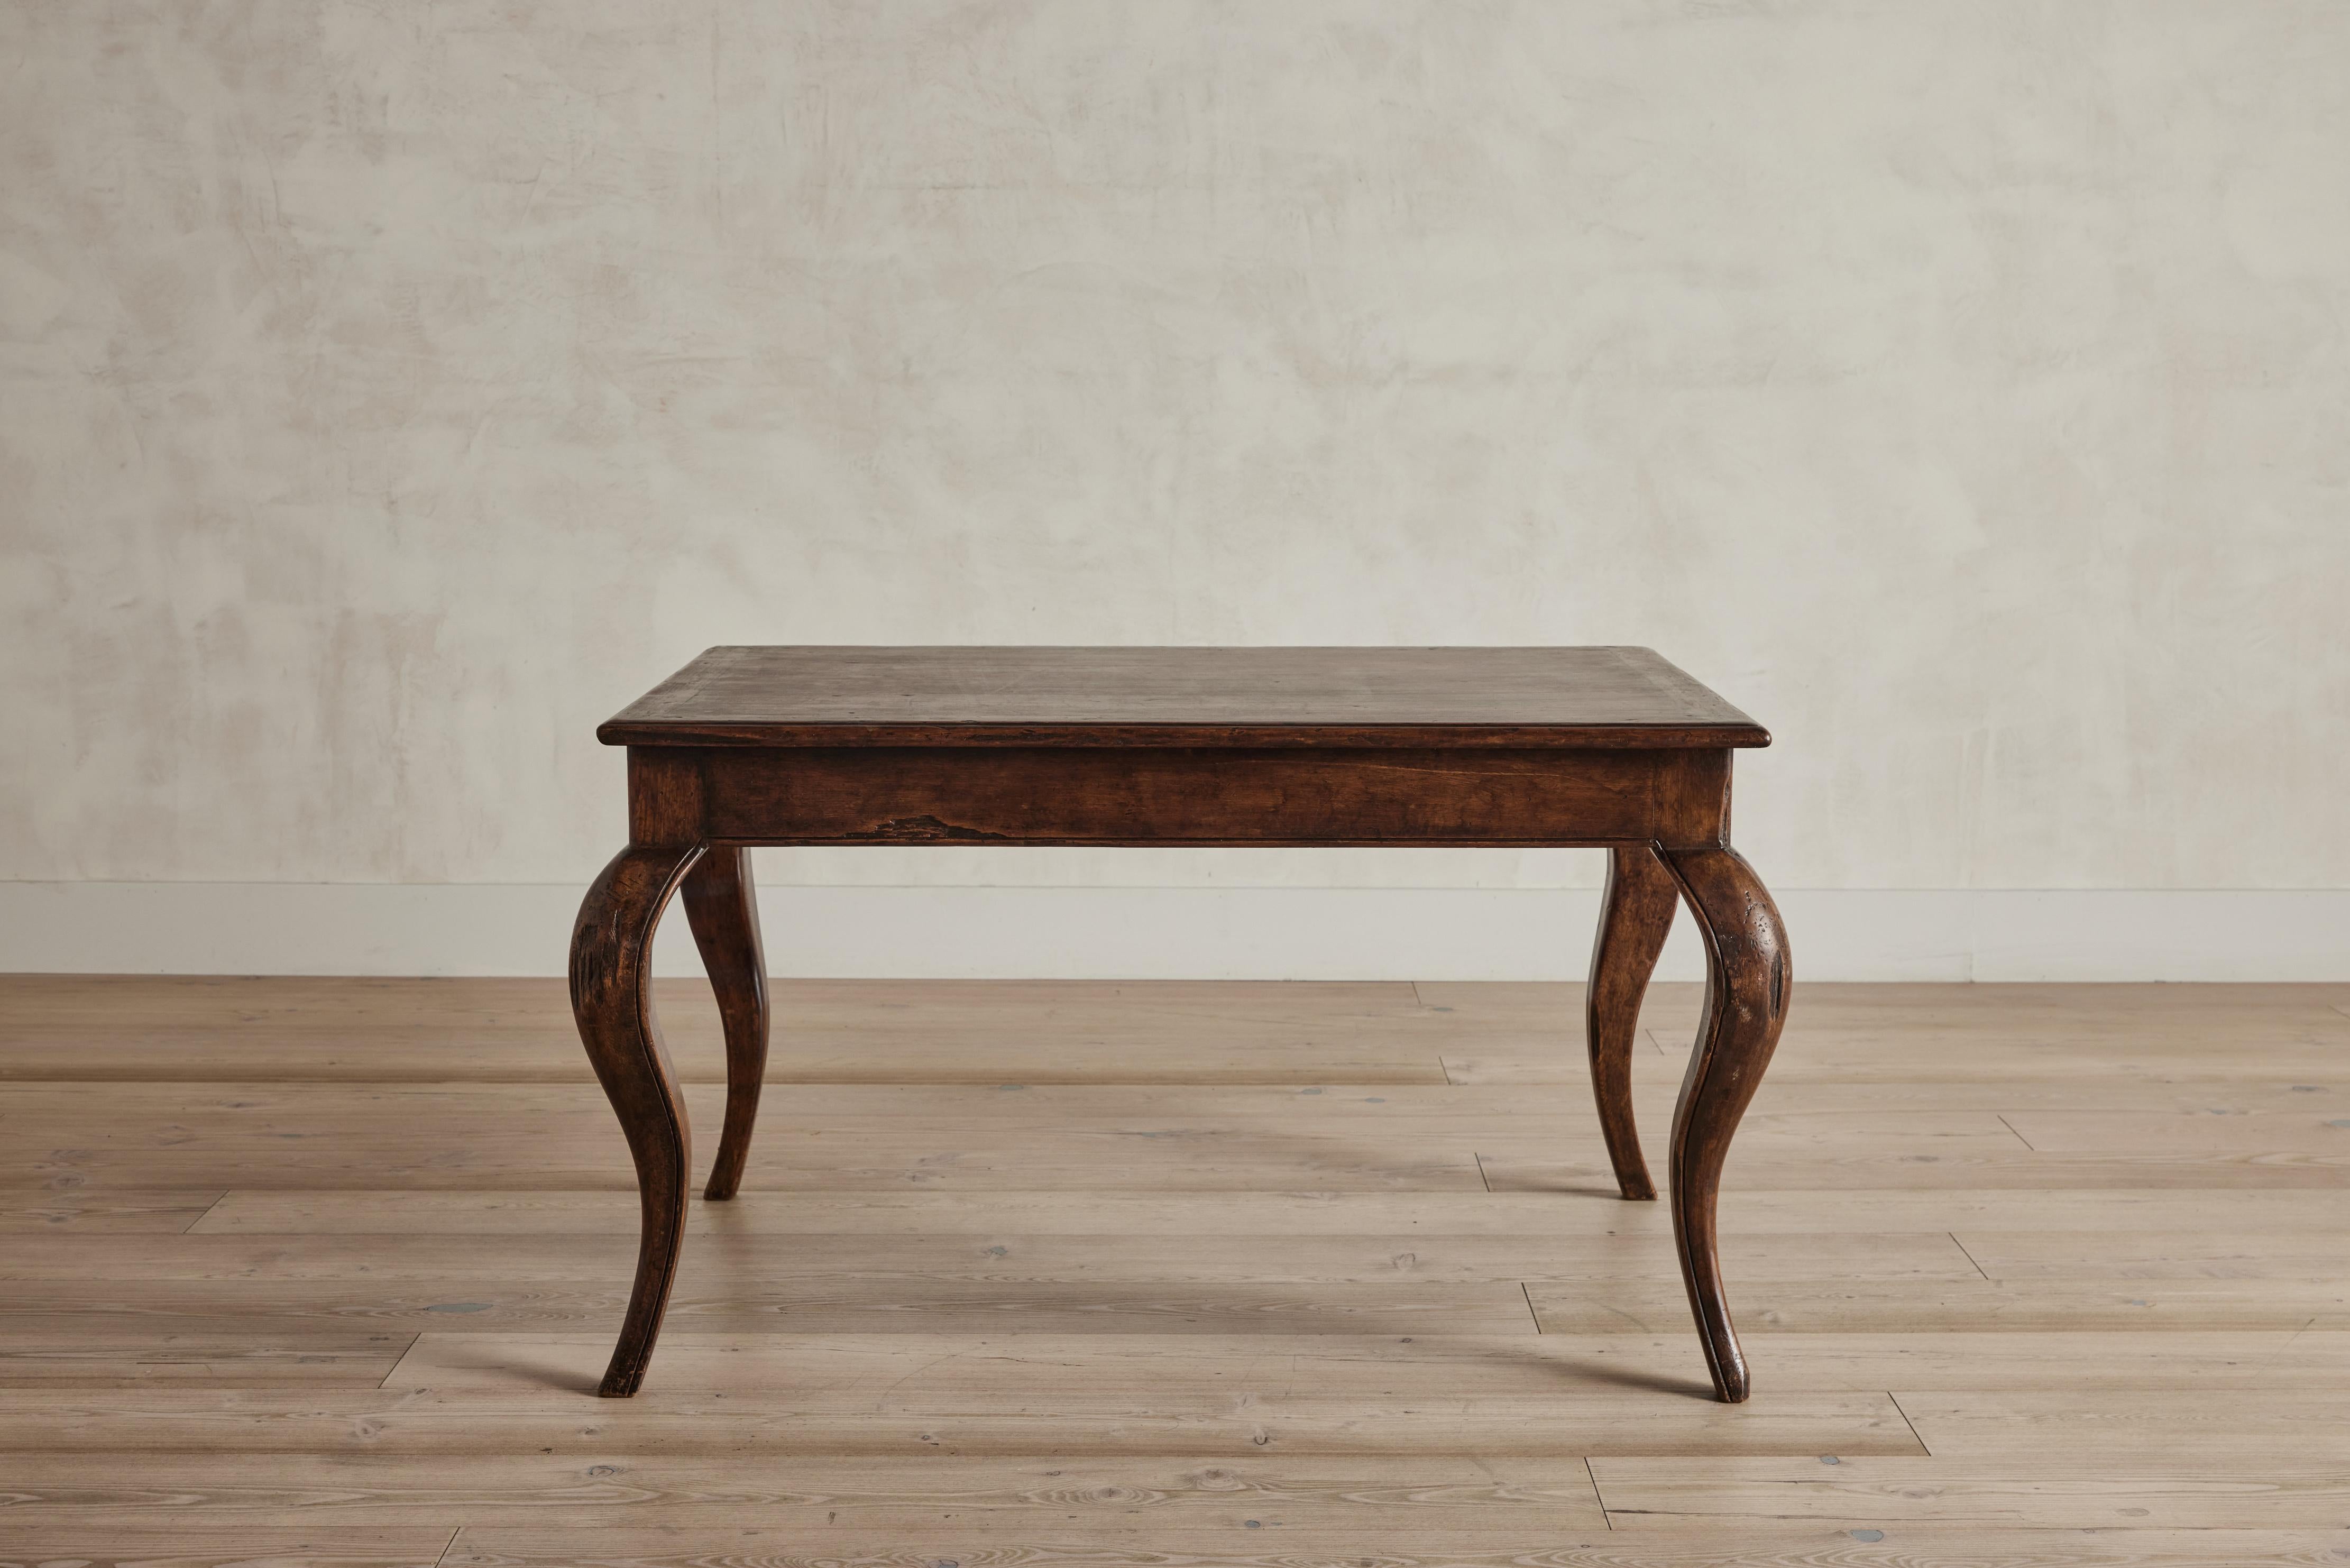 Table d'appoint ou table basse en bois de style colonial espagnol de la fin du 19e siècle au Pérou. Cette table repose sur quatre solides pieds cabriole.